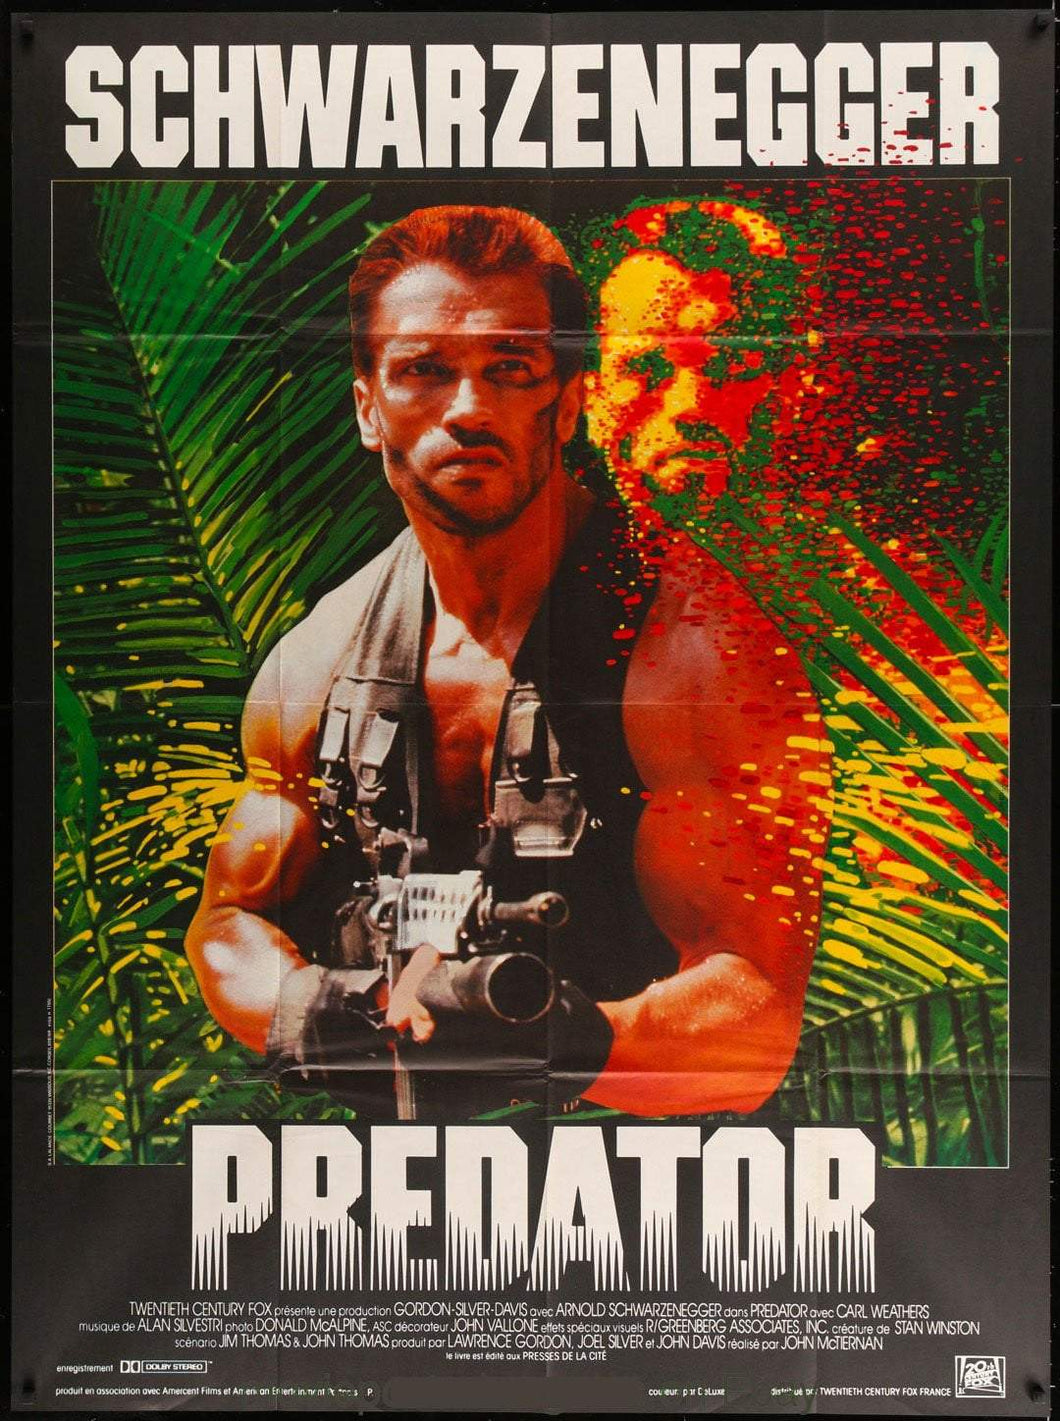 Predator (French) - Printed Originals